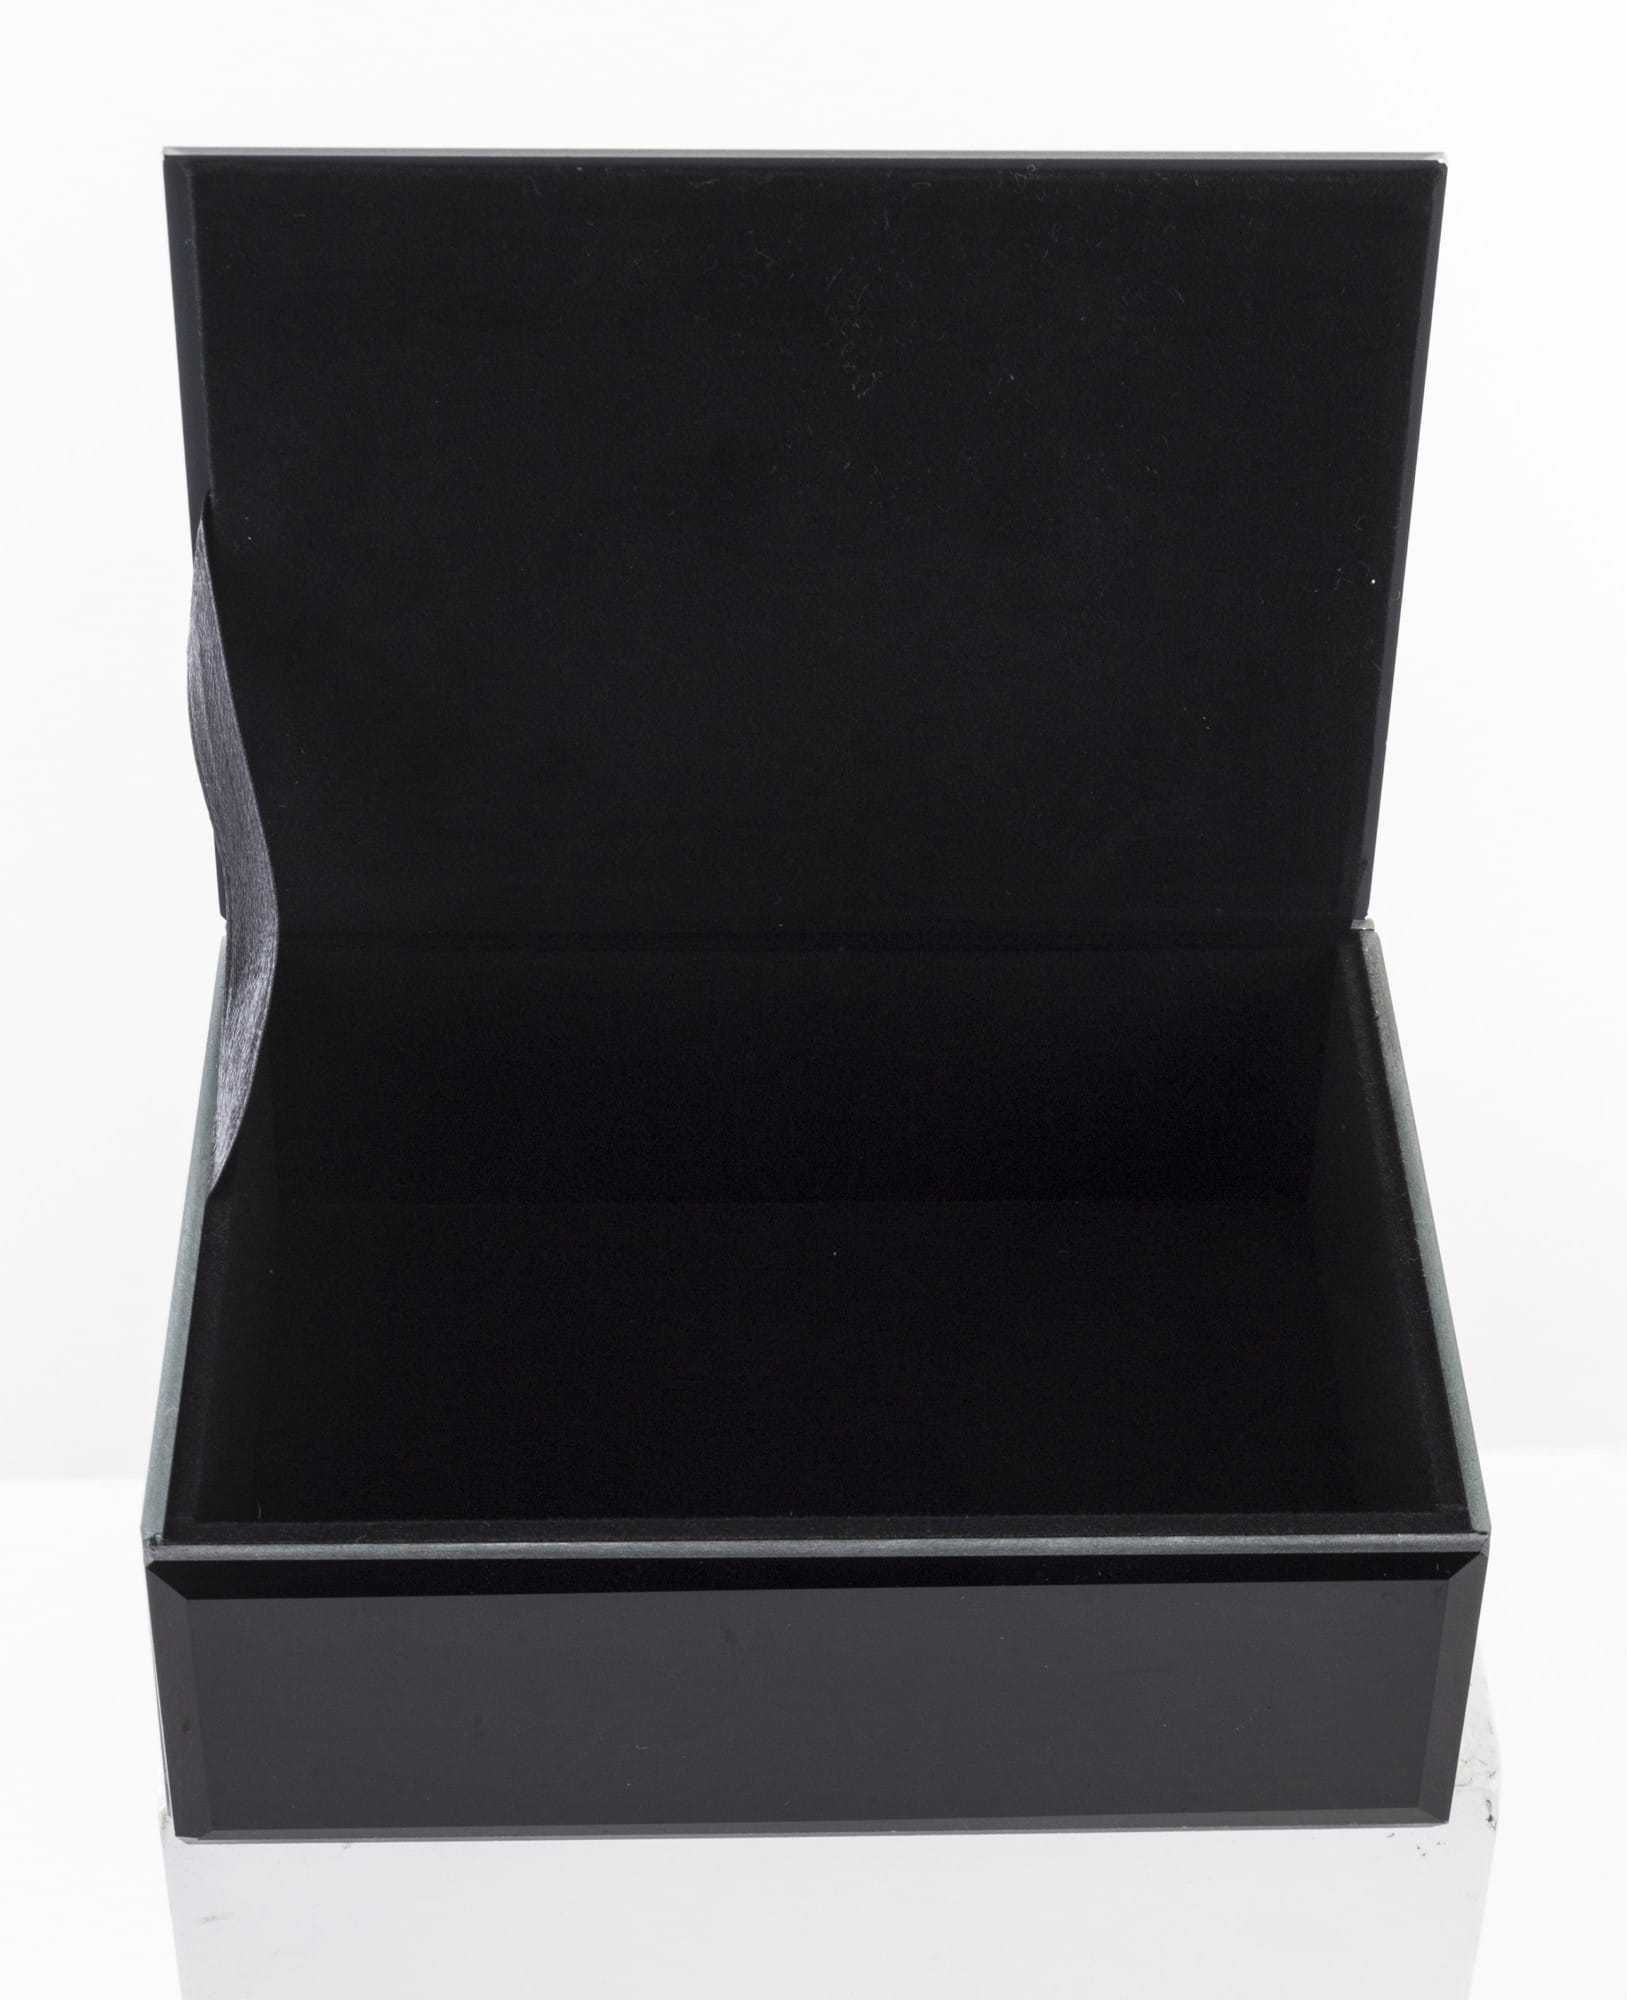 Szklana prostokątna szkatułka czarna 16x12 cm